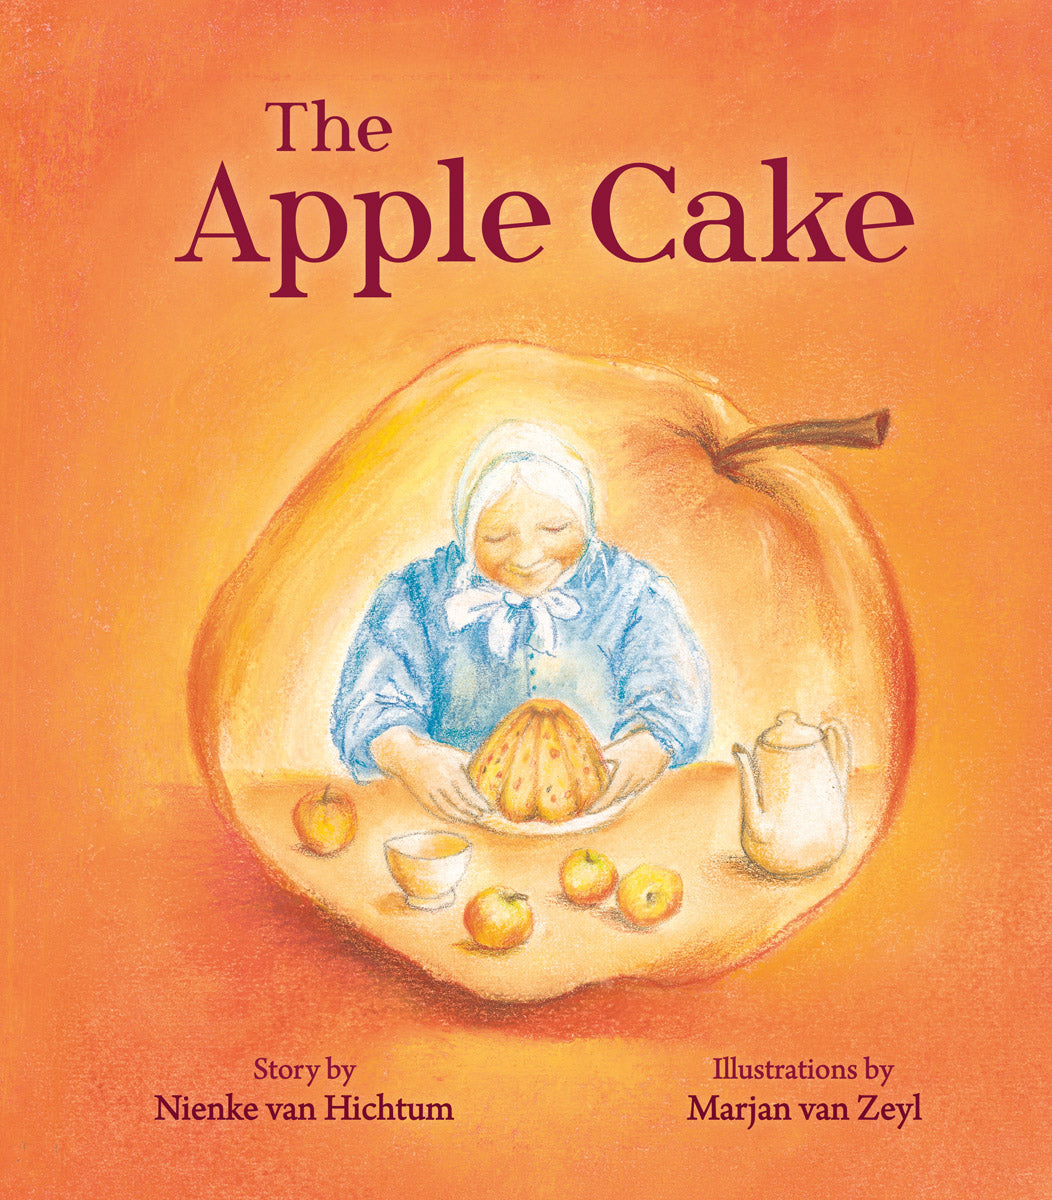 The Apple Cake by Nienke van Hichtum